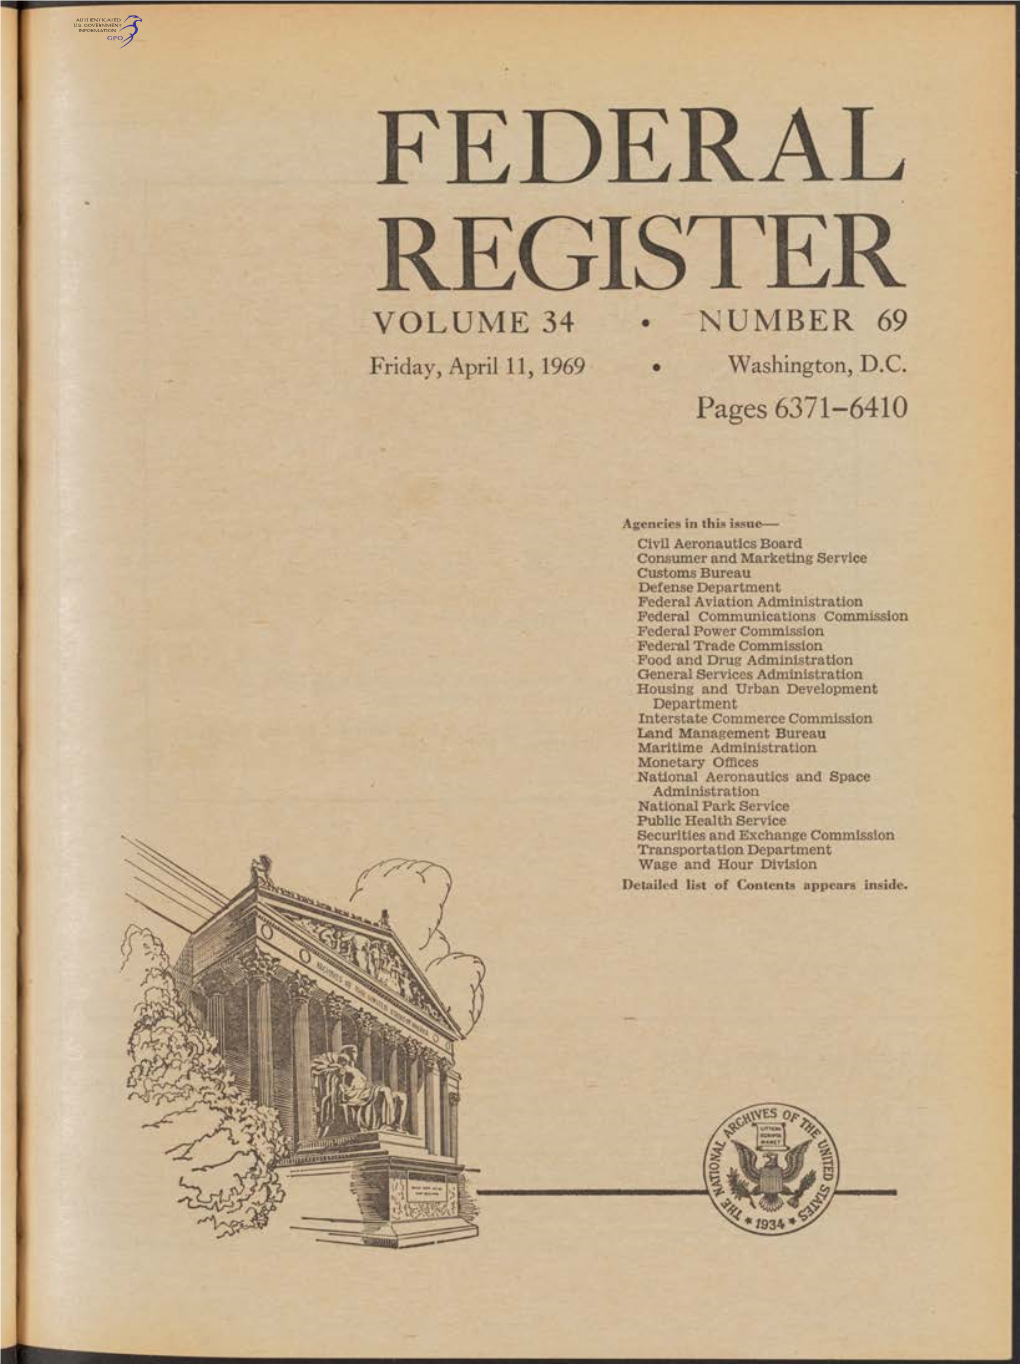 Federal Register Volume 34 • Number 69